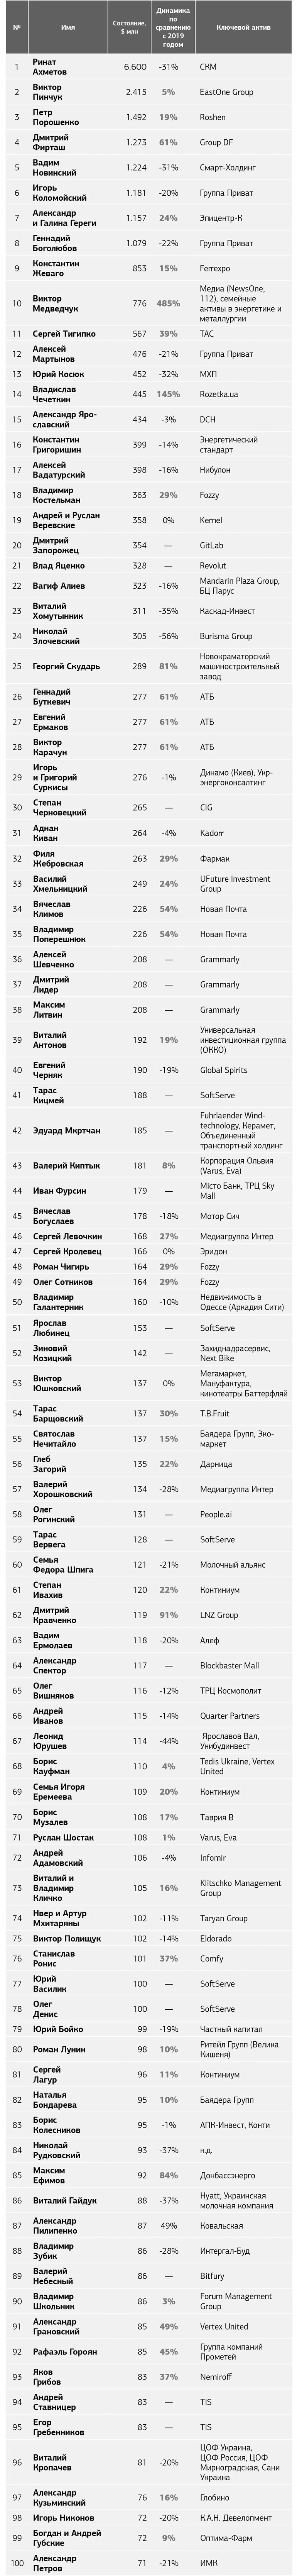 ТОП-100 самых богатых в Украине — рейтинг НВ